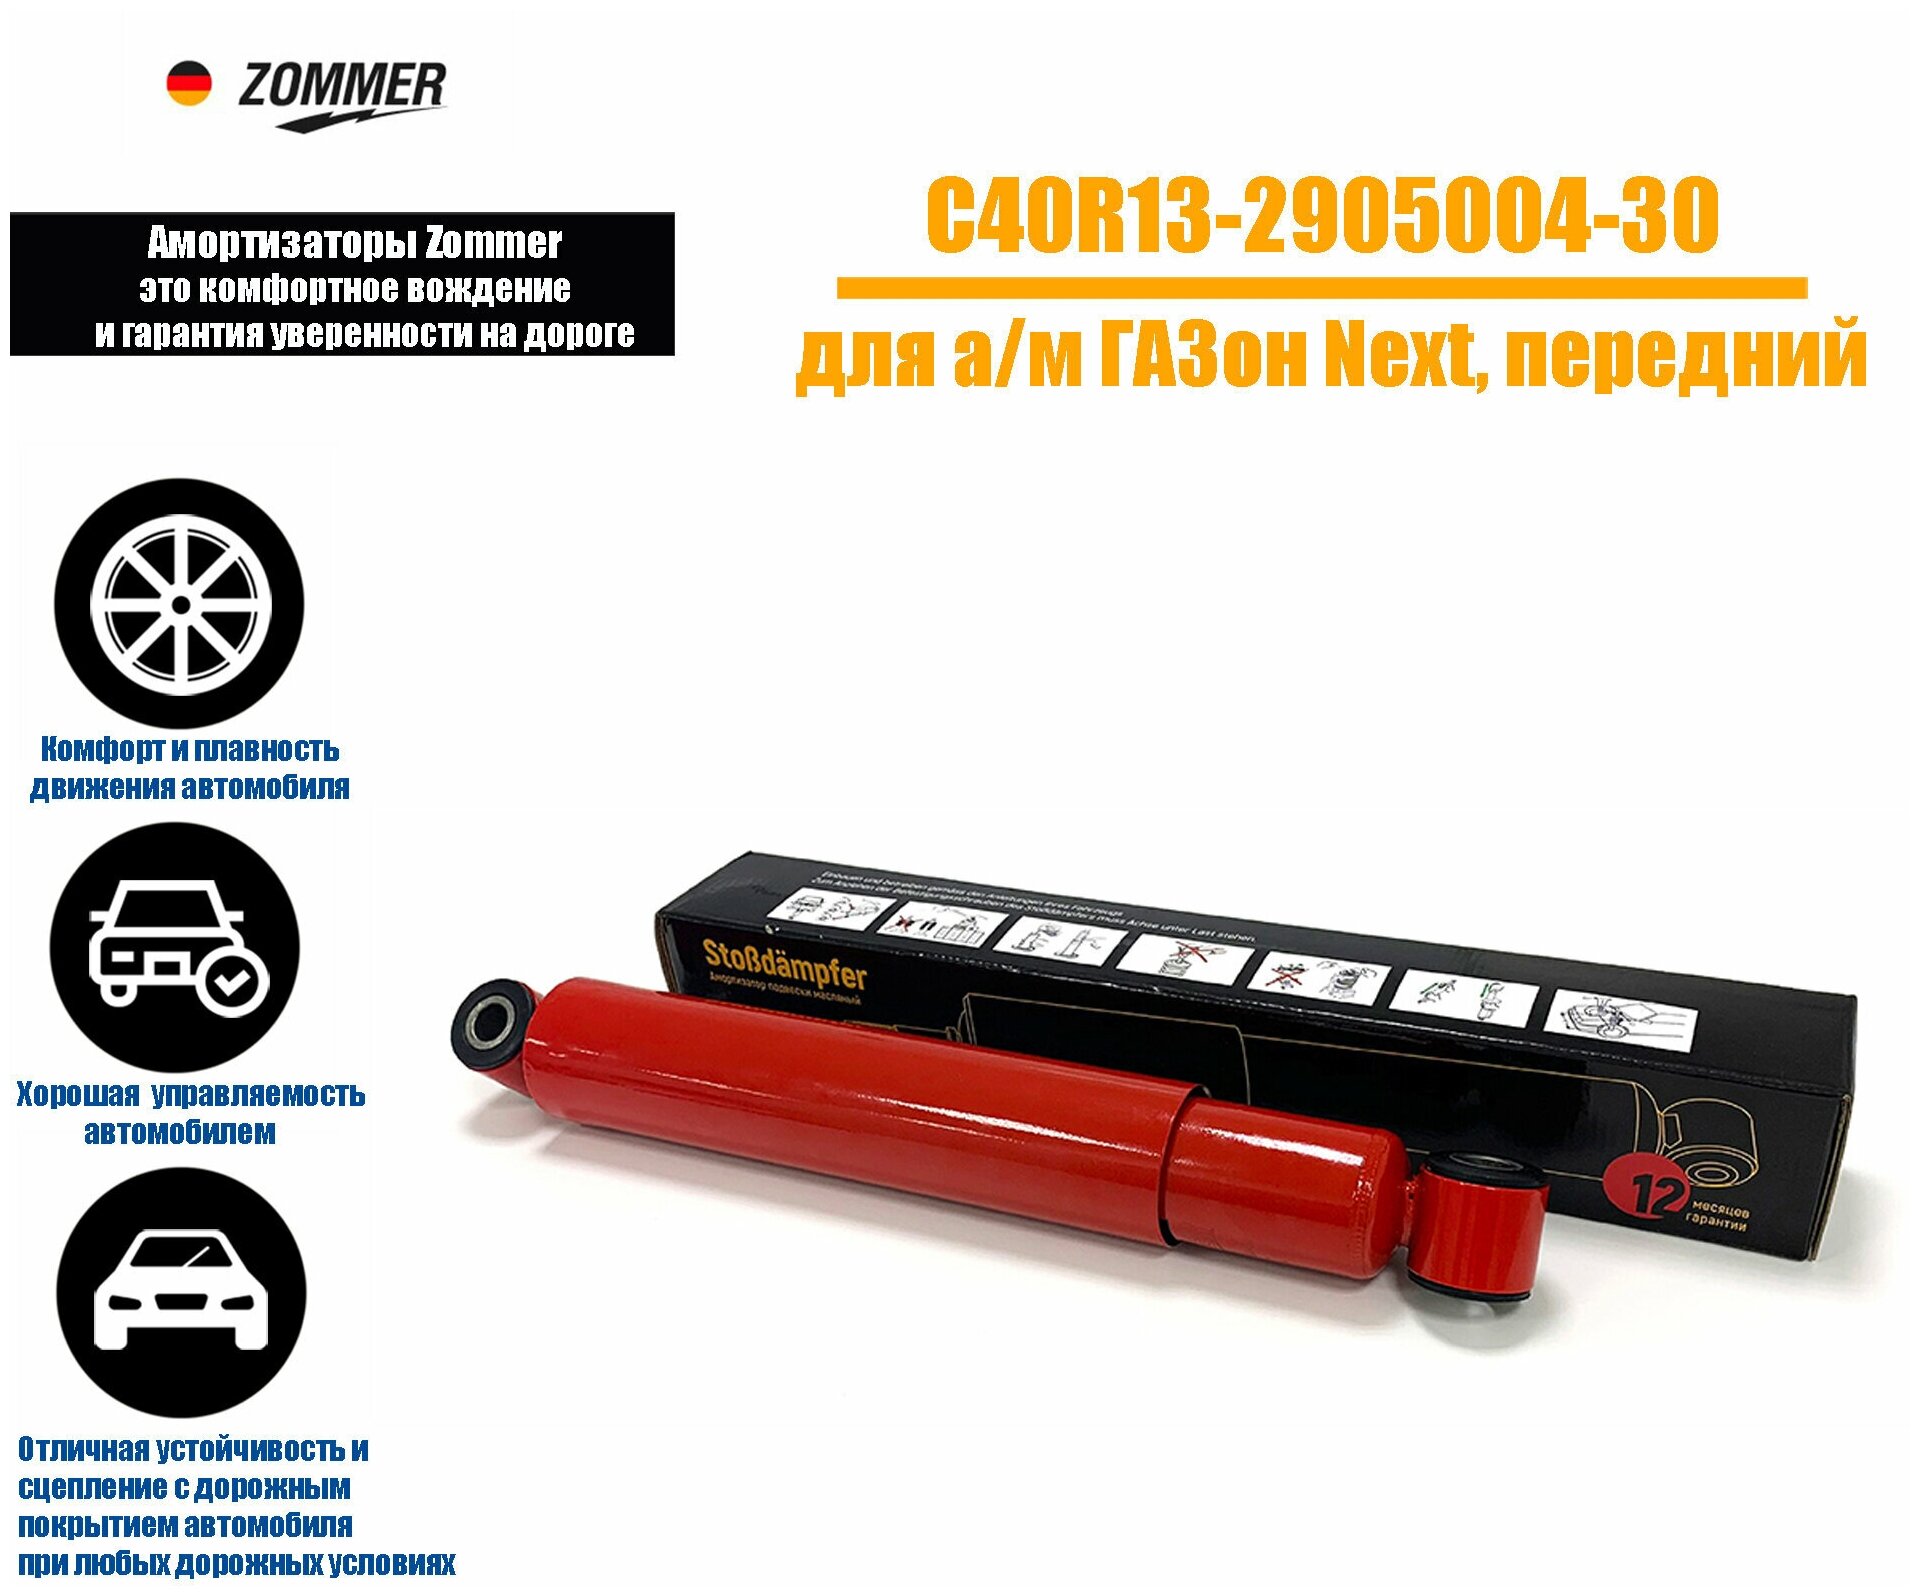 Амортизатор подвески ГАЗон NEXT передний ZOMMER C40R13-2905004-30